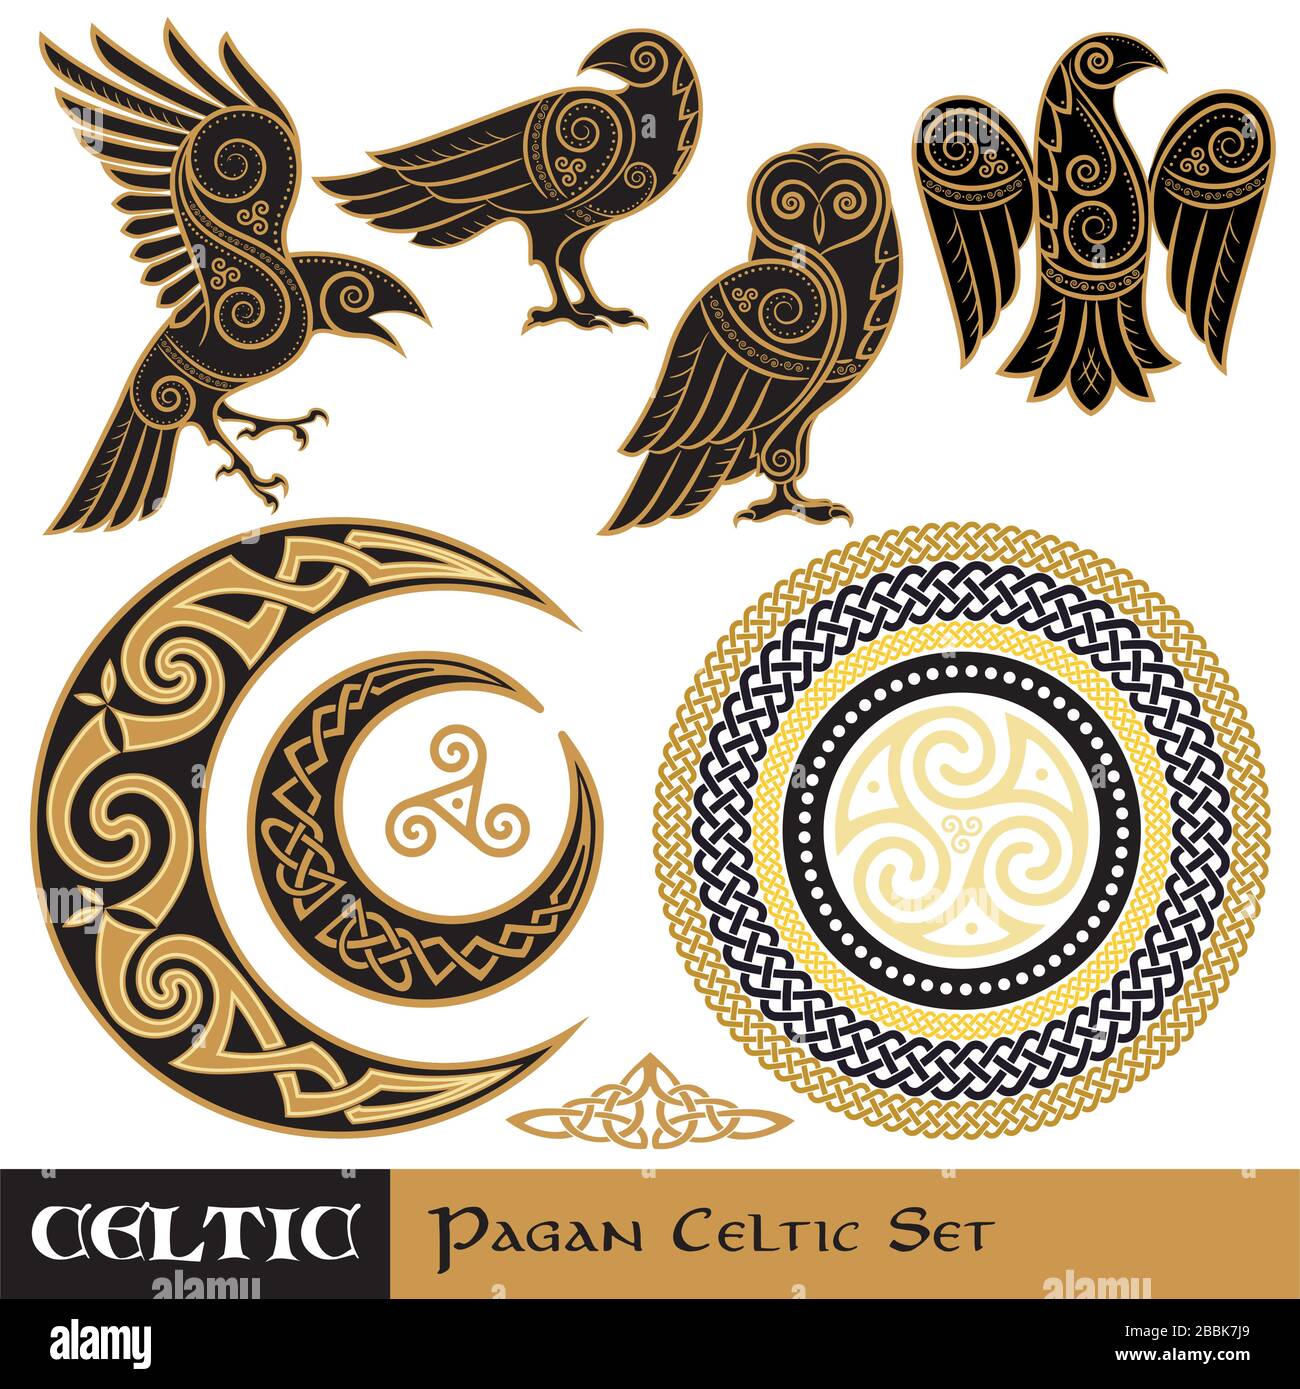 Set de magie celtique. Lune et Soleil cornés celtiques, Owl celtique, Corbeau celtique Illustration de Vecteur